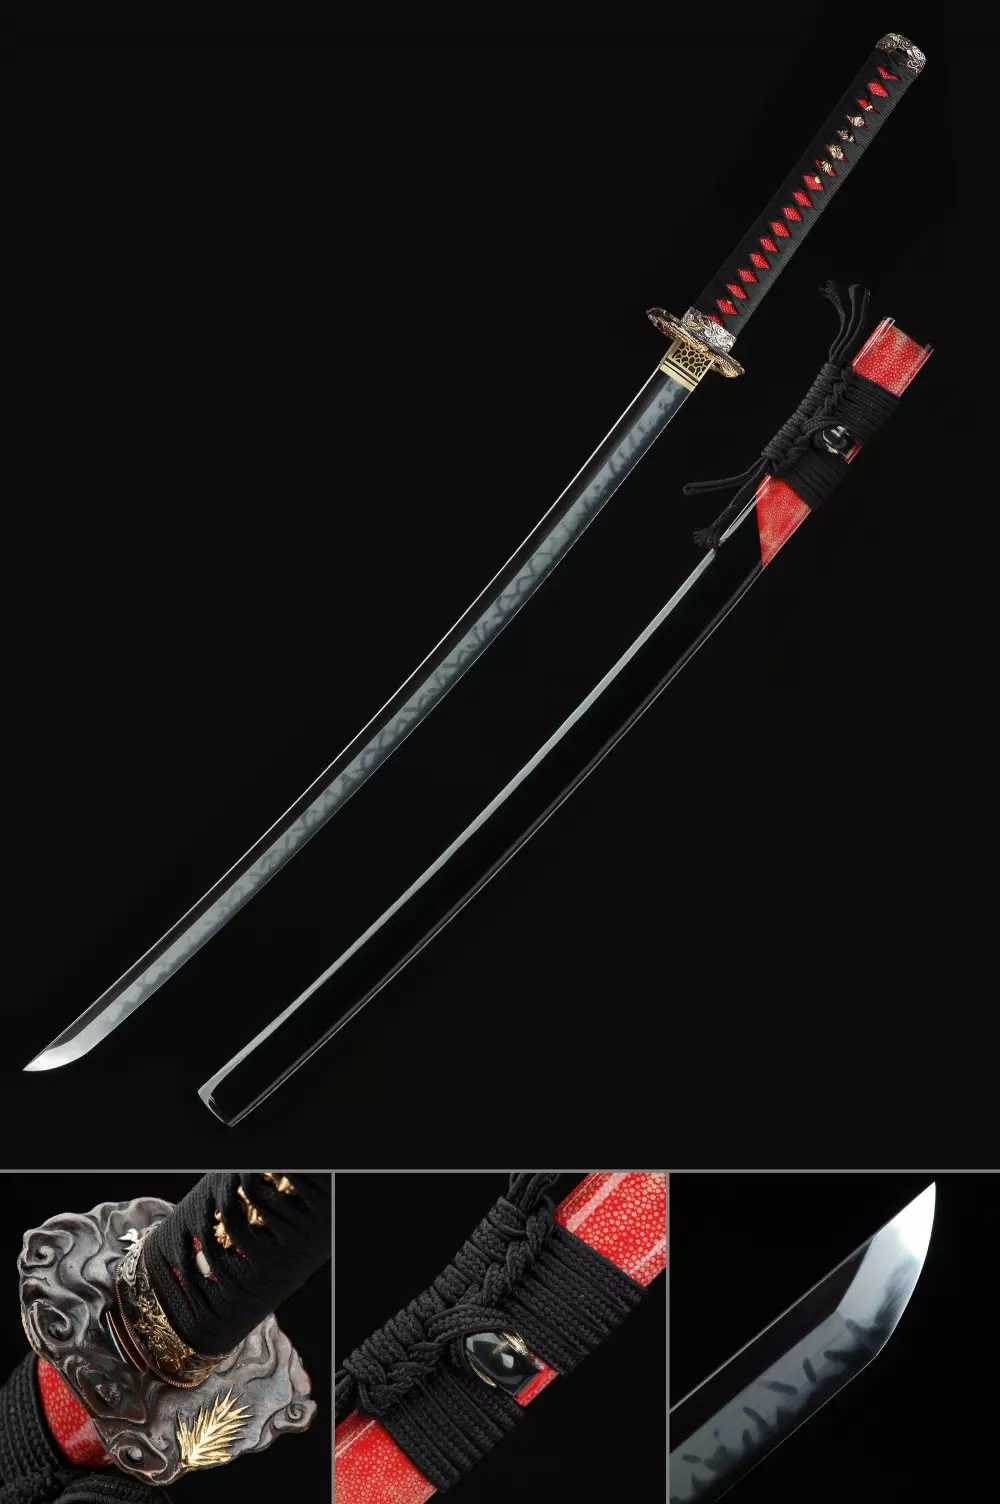 Espadas del fin del mundo', acero toledano contra katanas japonesas